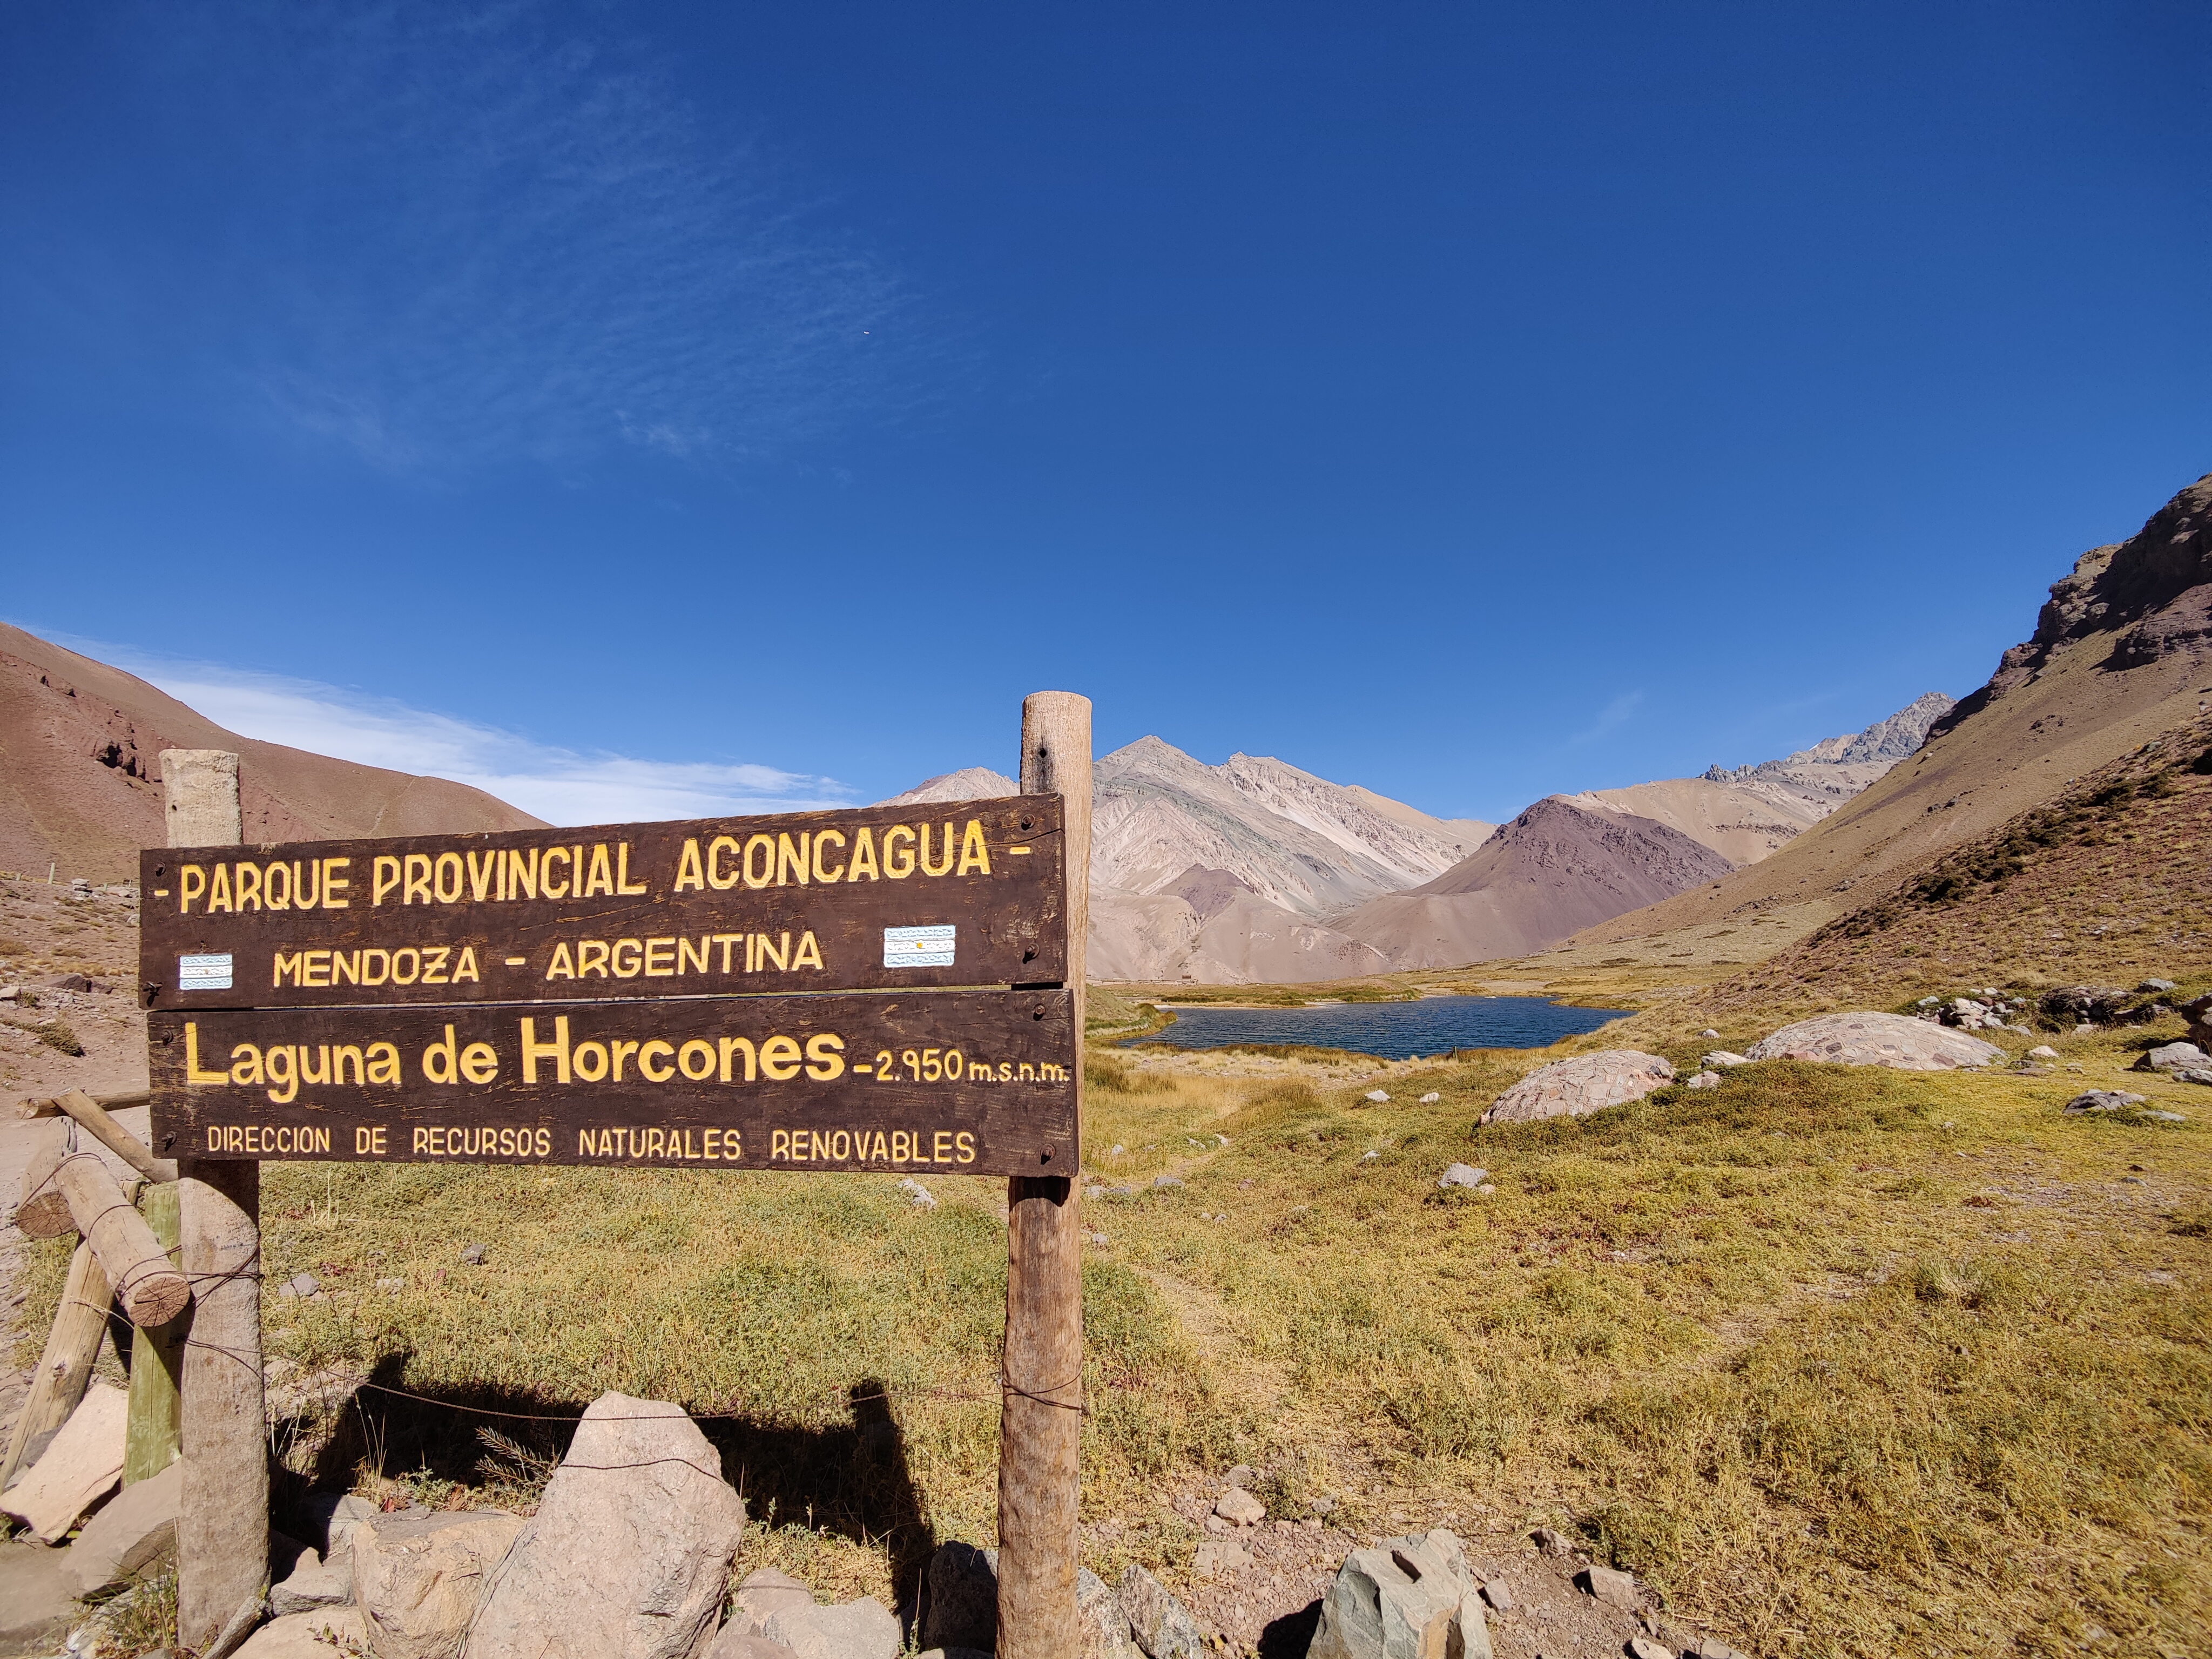 Mt Aconcagua National Park